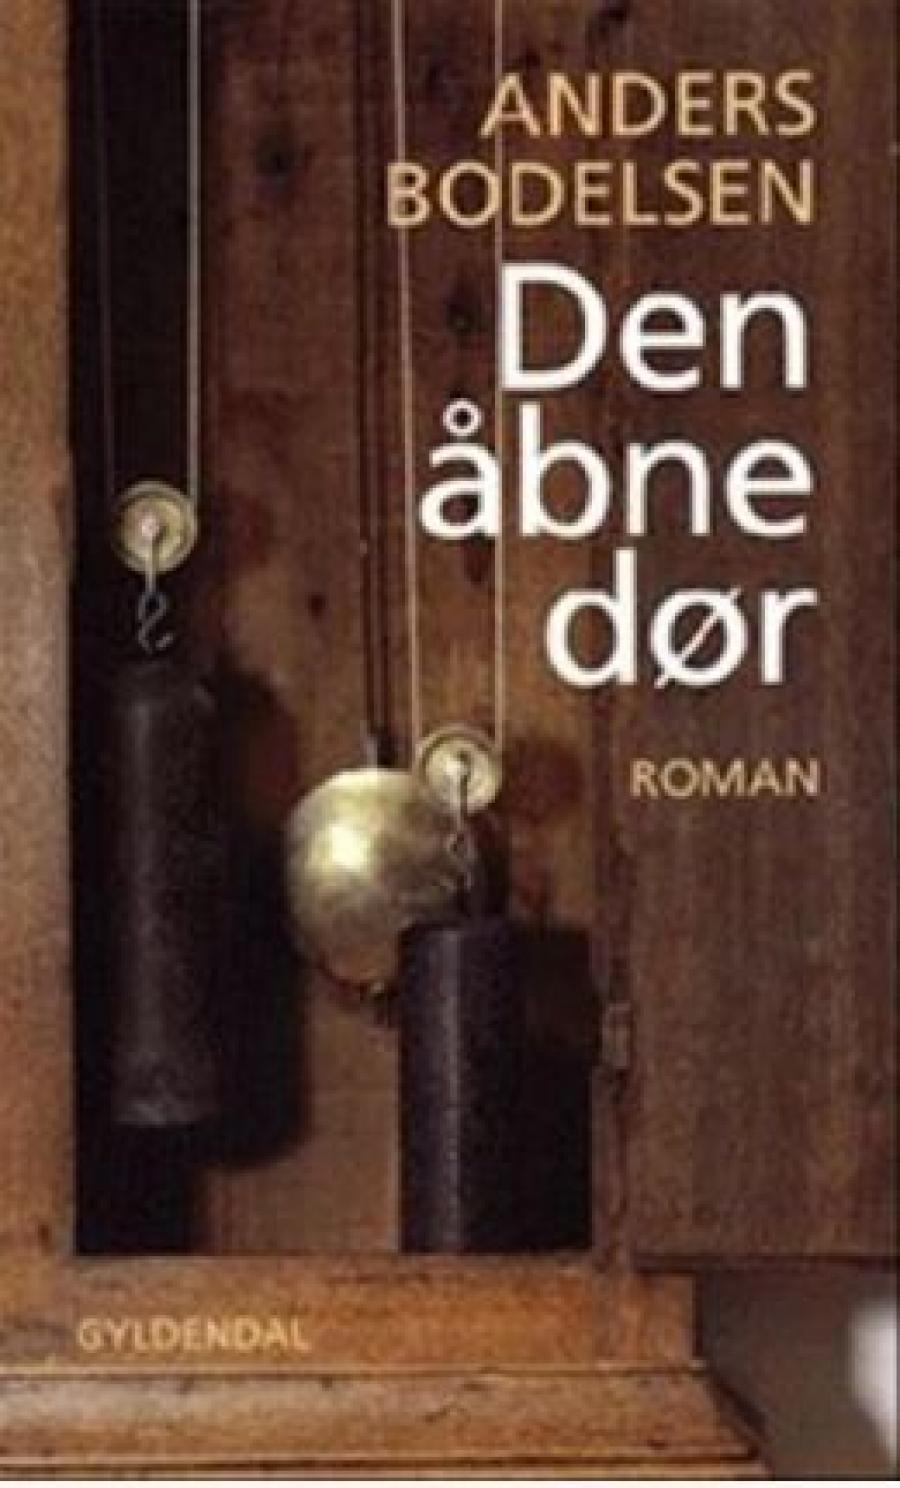 Anders Bodelsen, "Den åbne dør"